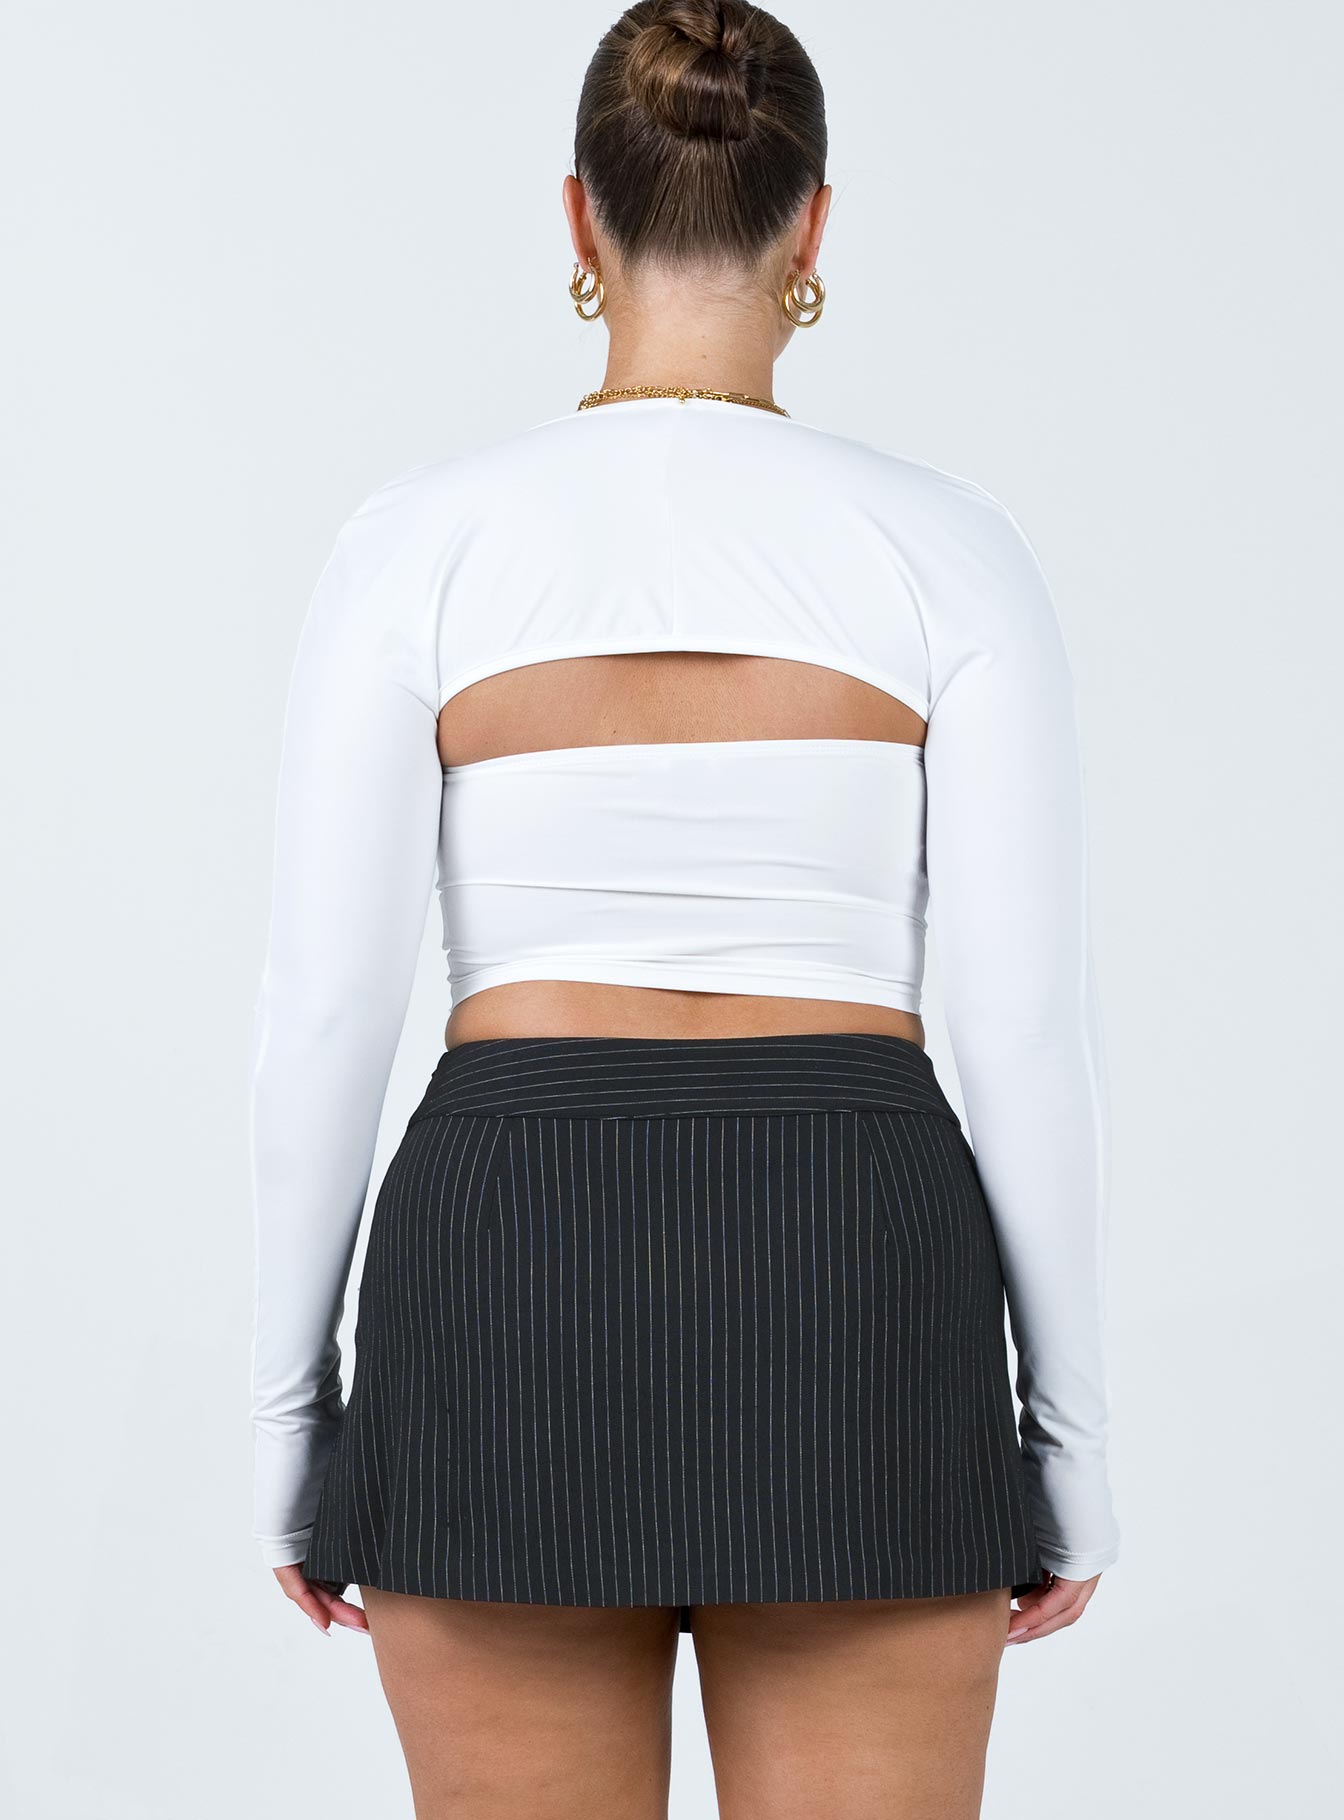 Bella Hadid's Micro-Mini Skirt Is A Summer Denim Trend